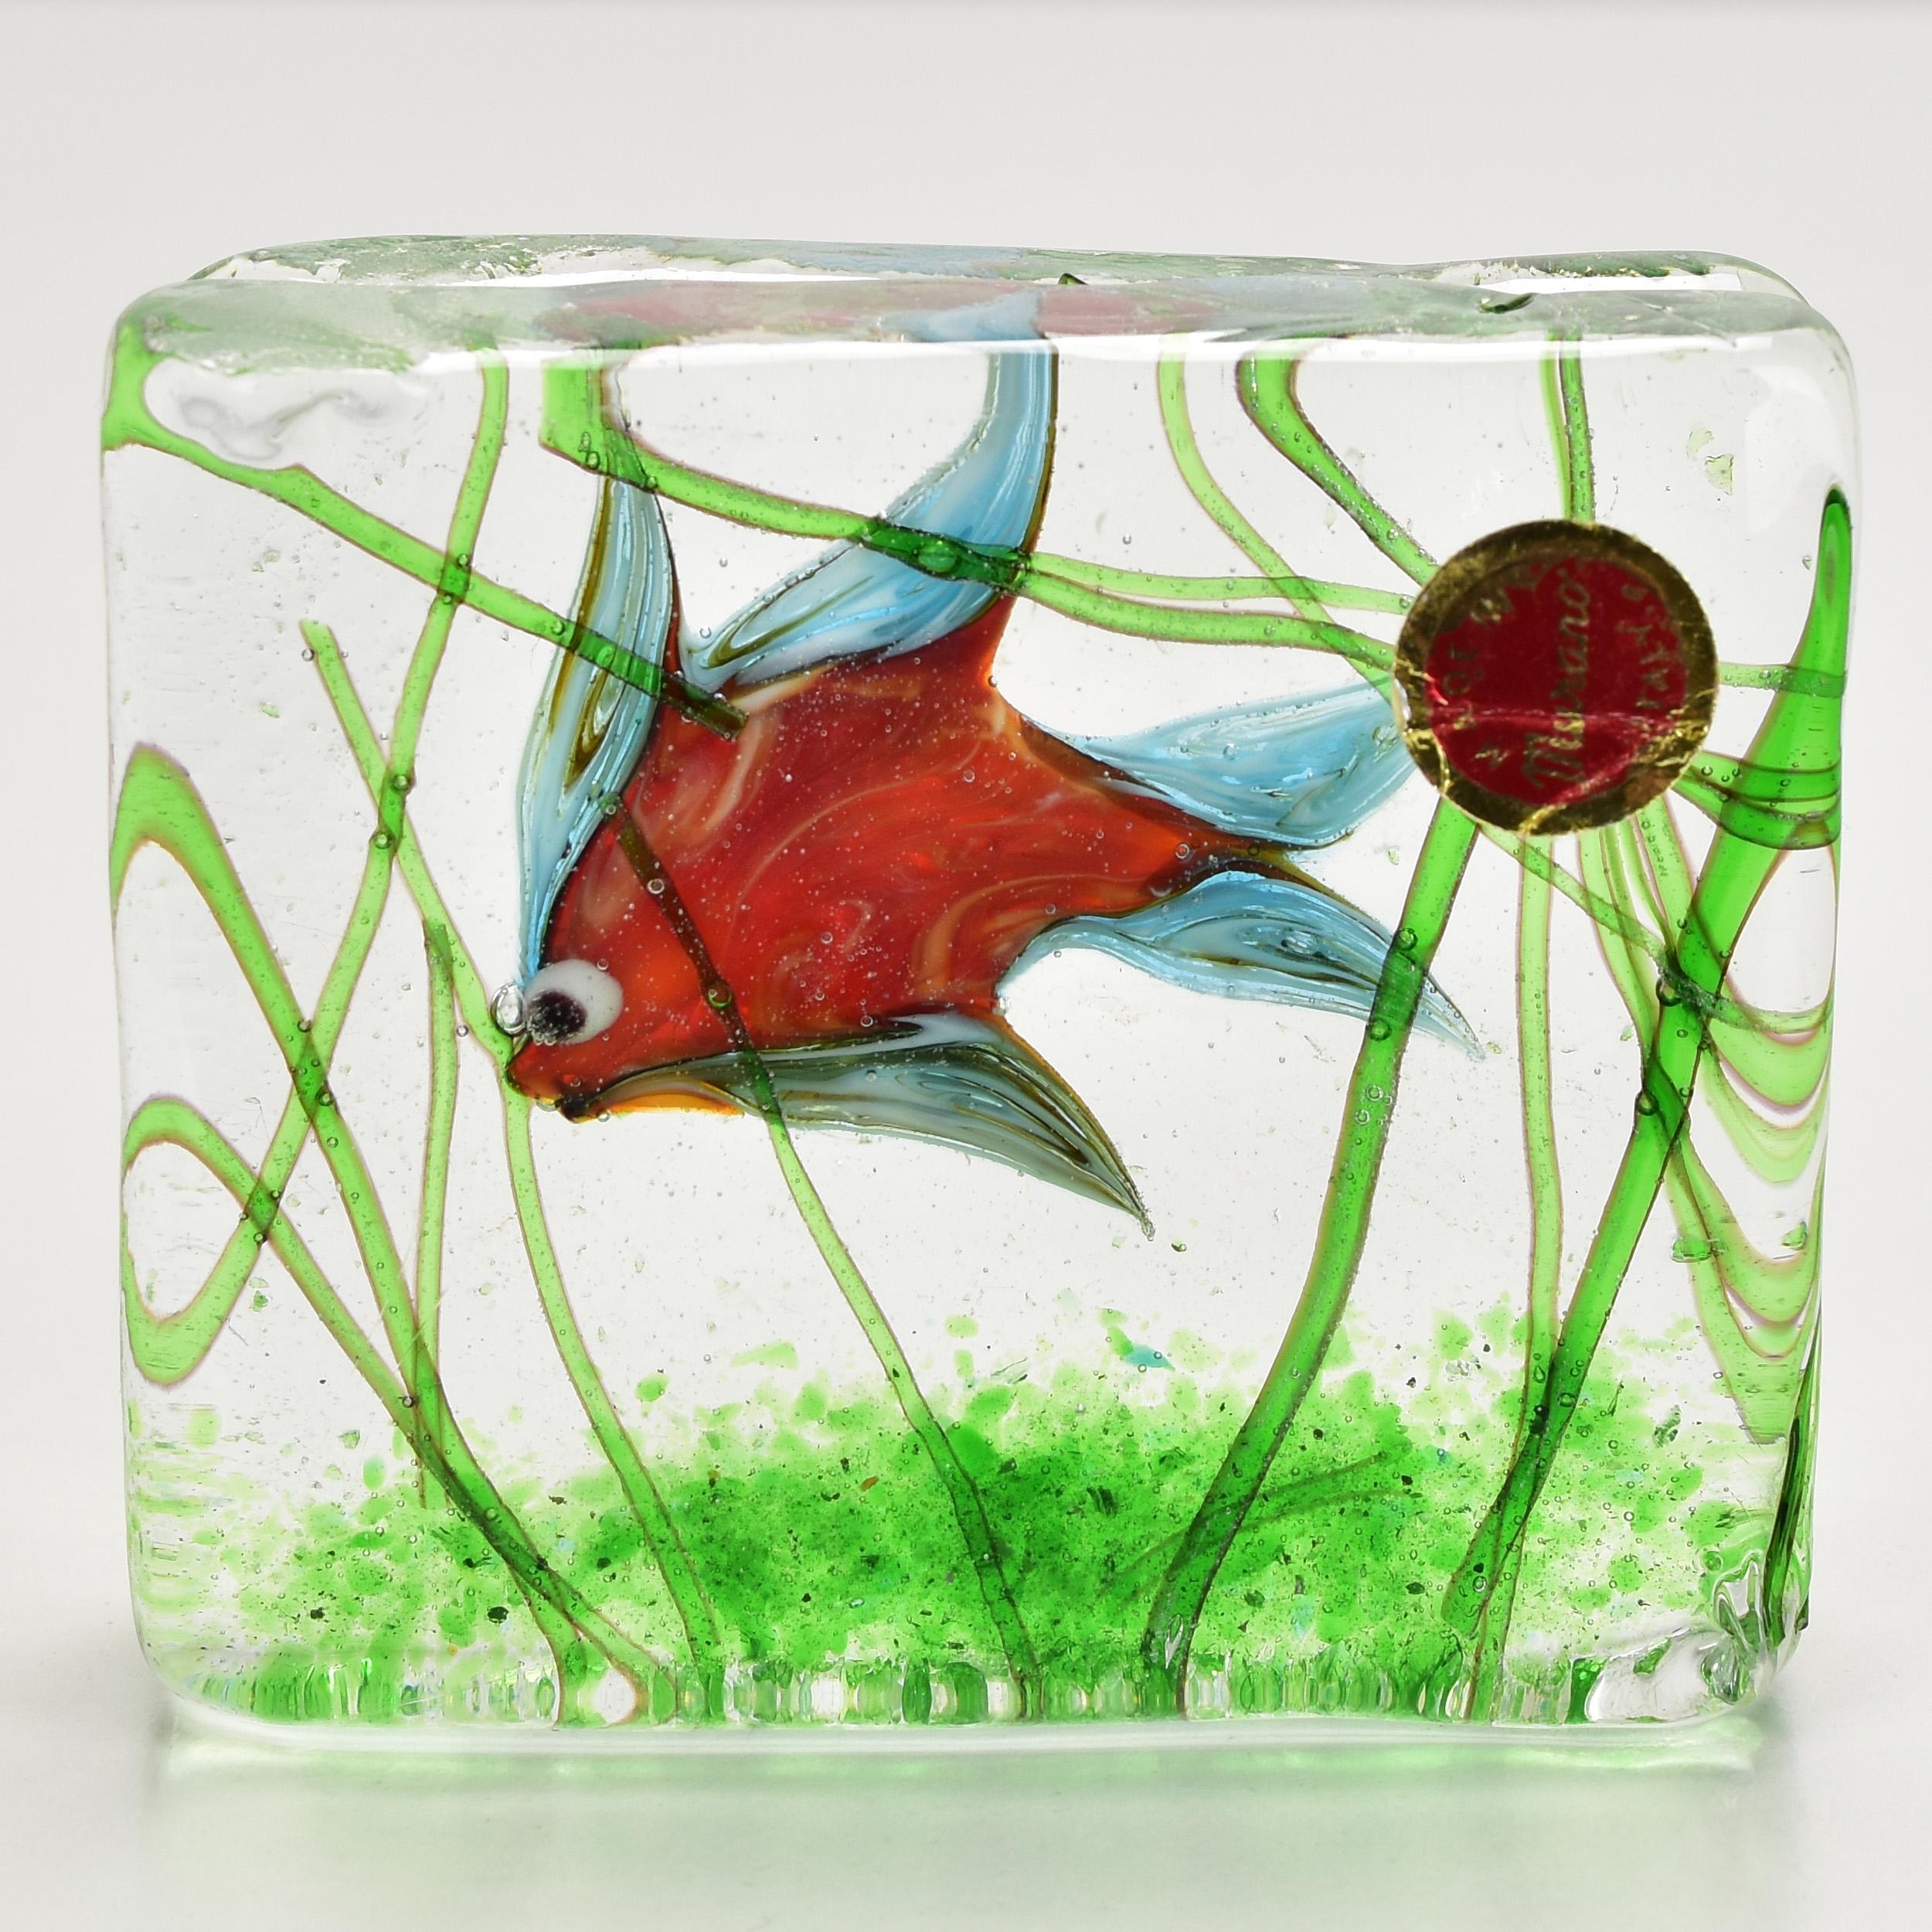 Ravissant presse-papier en forme de bloc aquarium de Murano. Un poisson tropical coloré à l'intérieur d'un bloc de verre avec des algues vertes. Une sculpture très décorative pour tout bureau ou étagère.
 